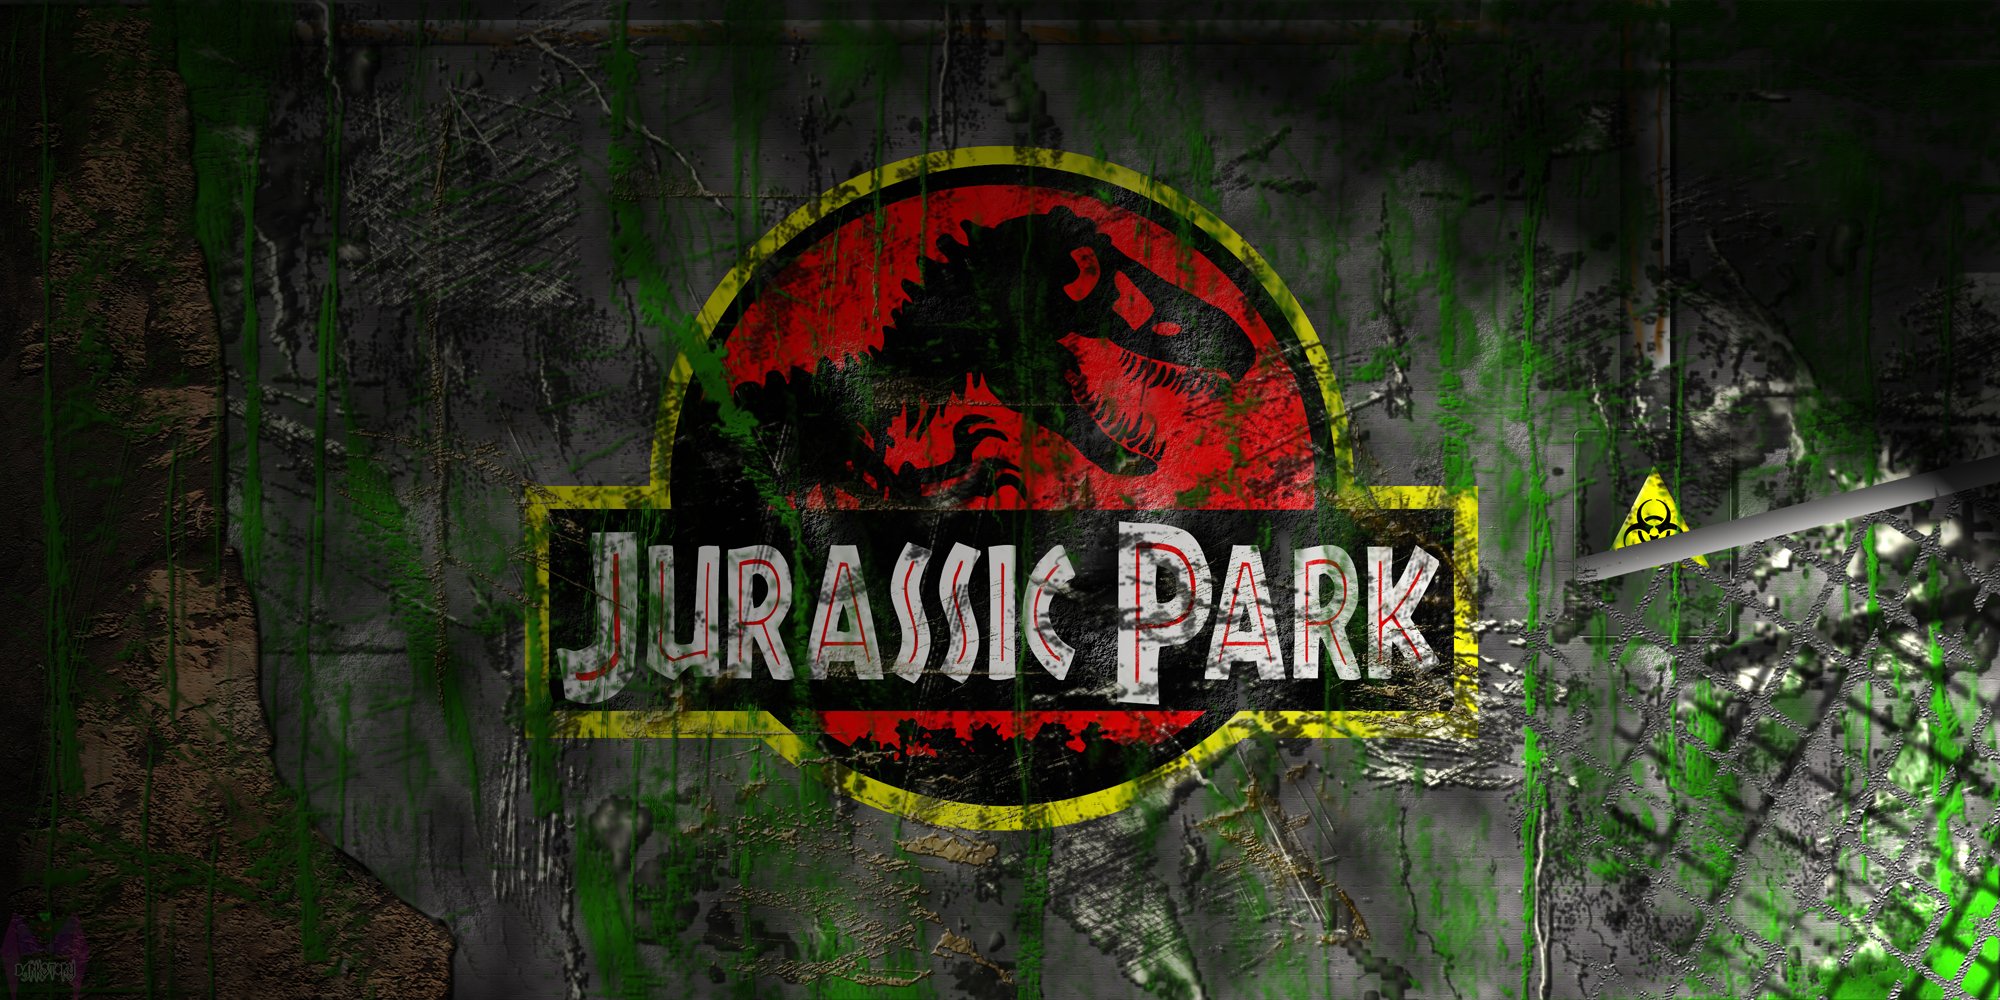 jurassic, Park, Adventure, Sci fi, Fantasy, Dinosaur, Movie, Film, Poster Wallpaper